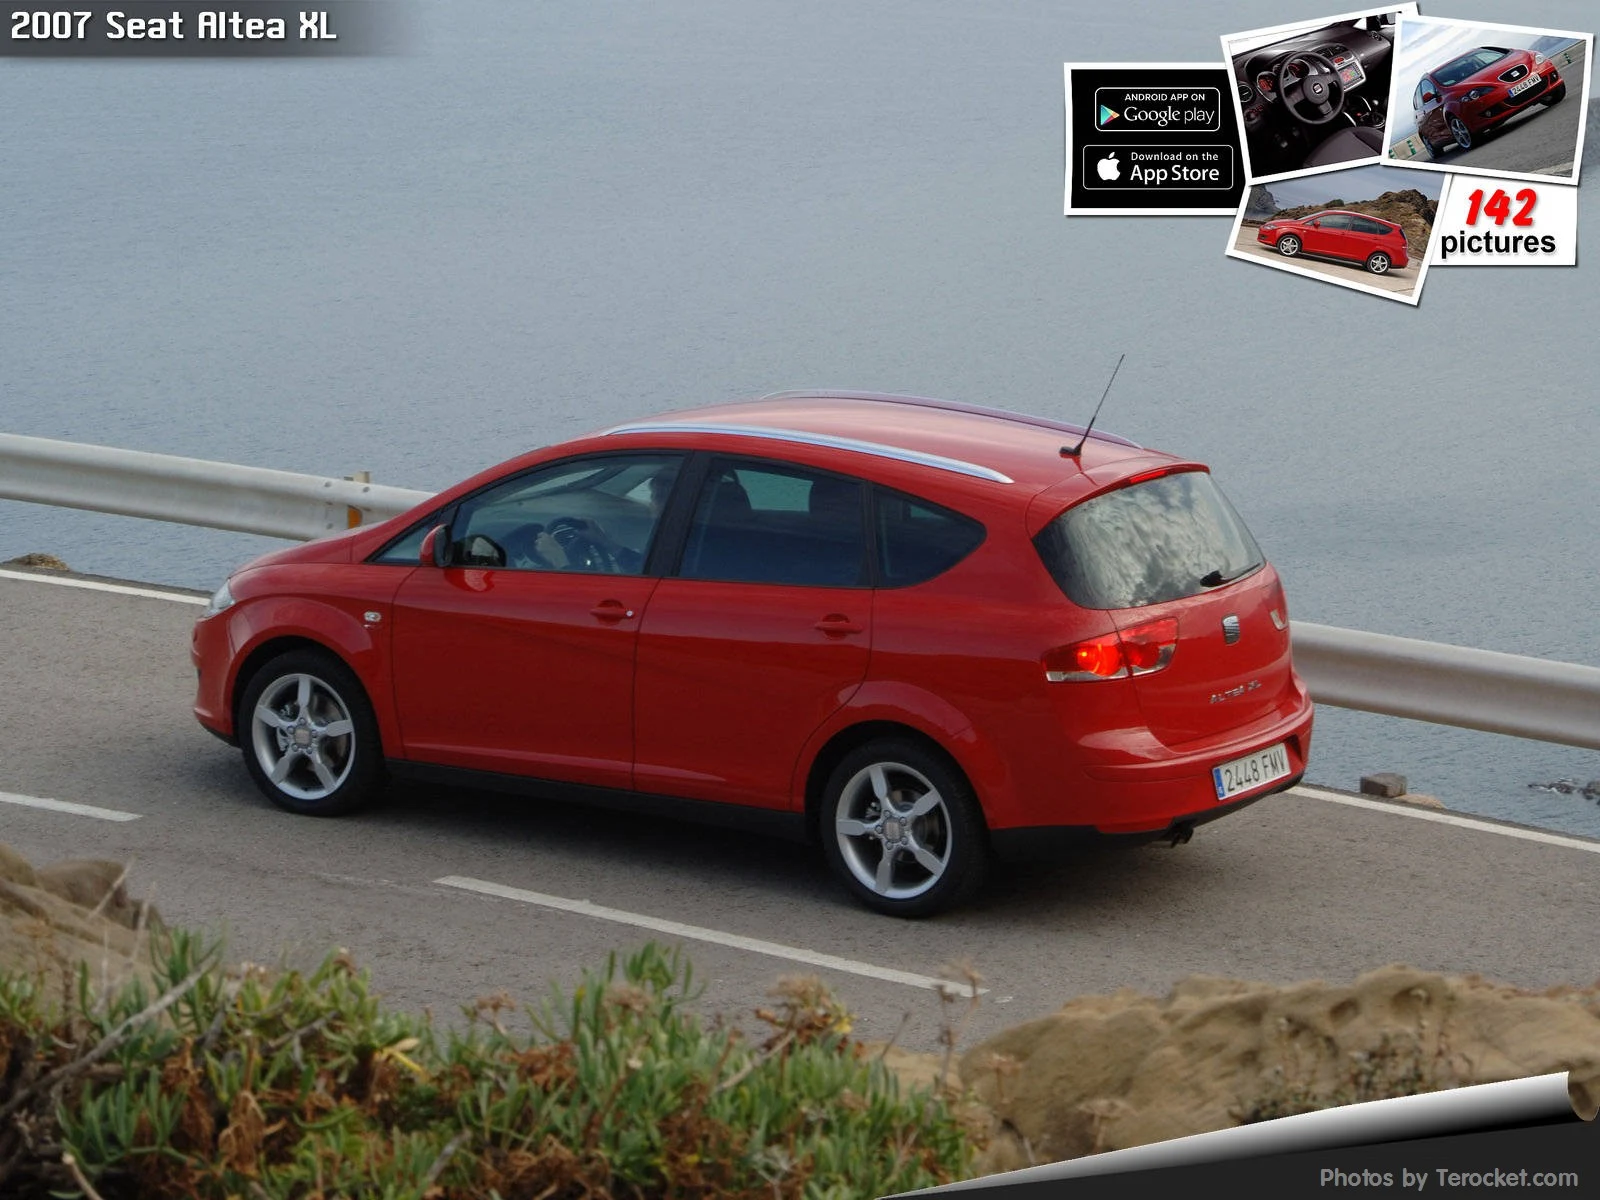 Hình ảnh xe ô tô Seat Altea XL 2007 & nội ngoại thất